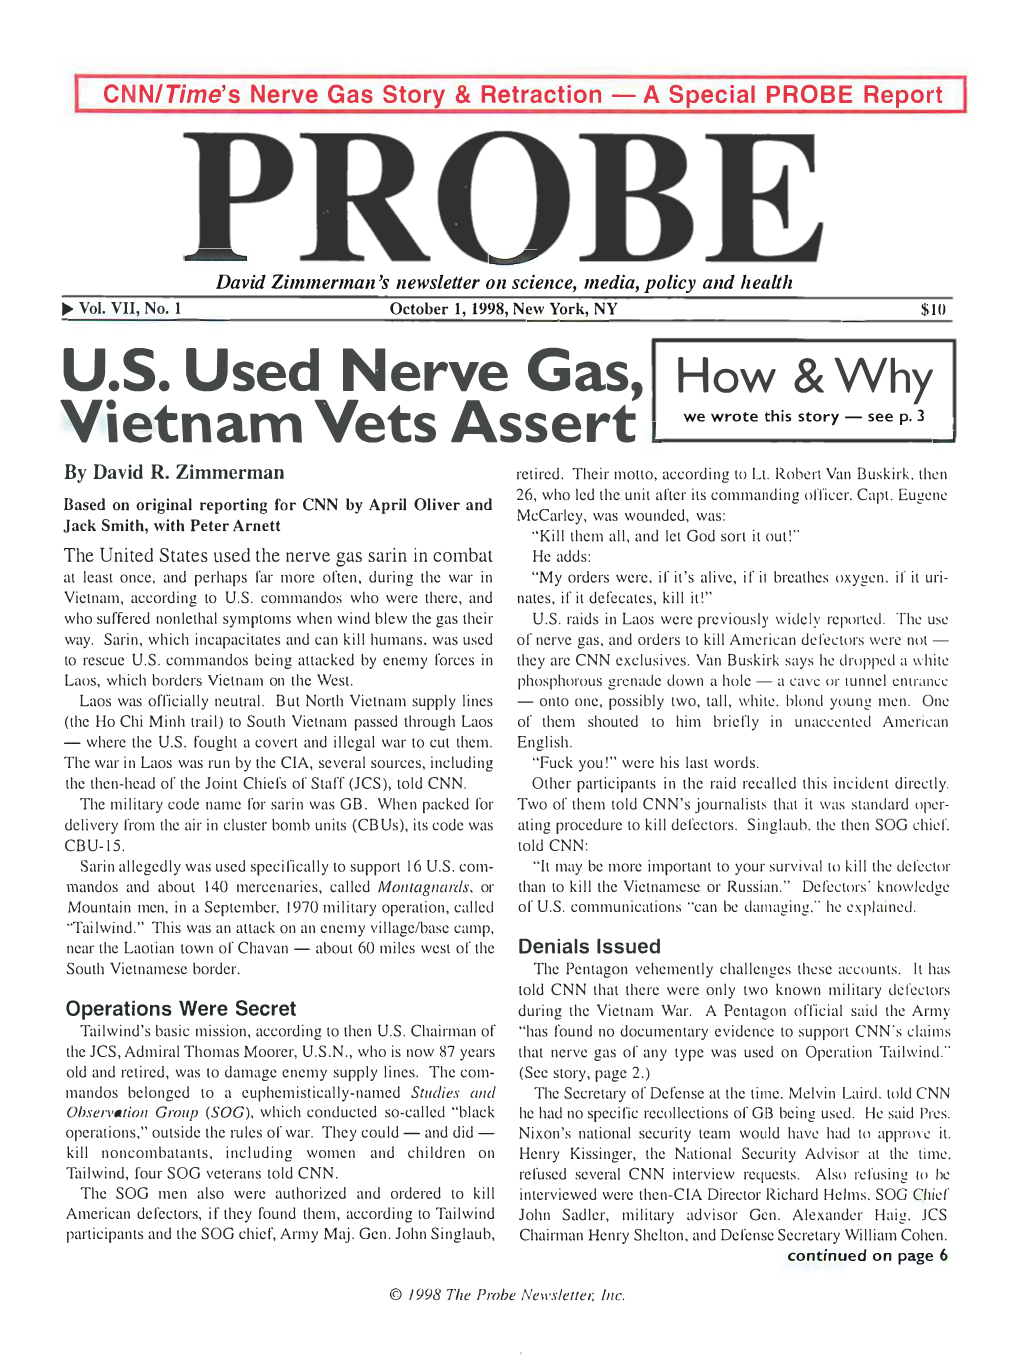 Probe Newsletter, October 1, 1998